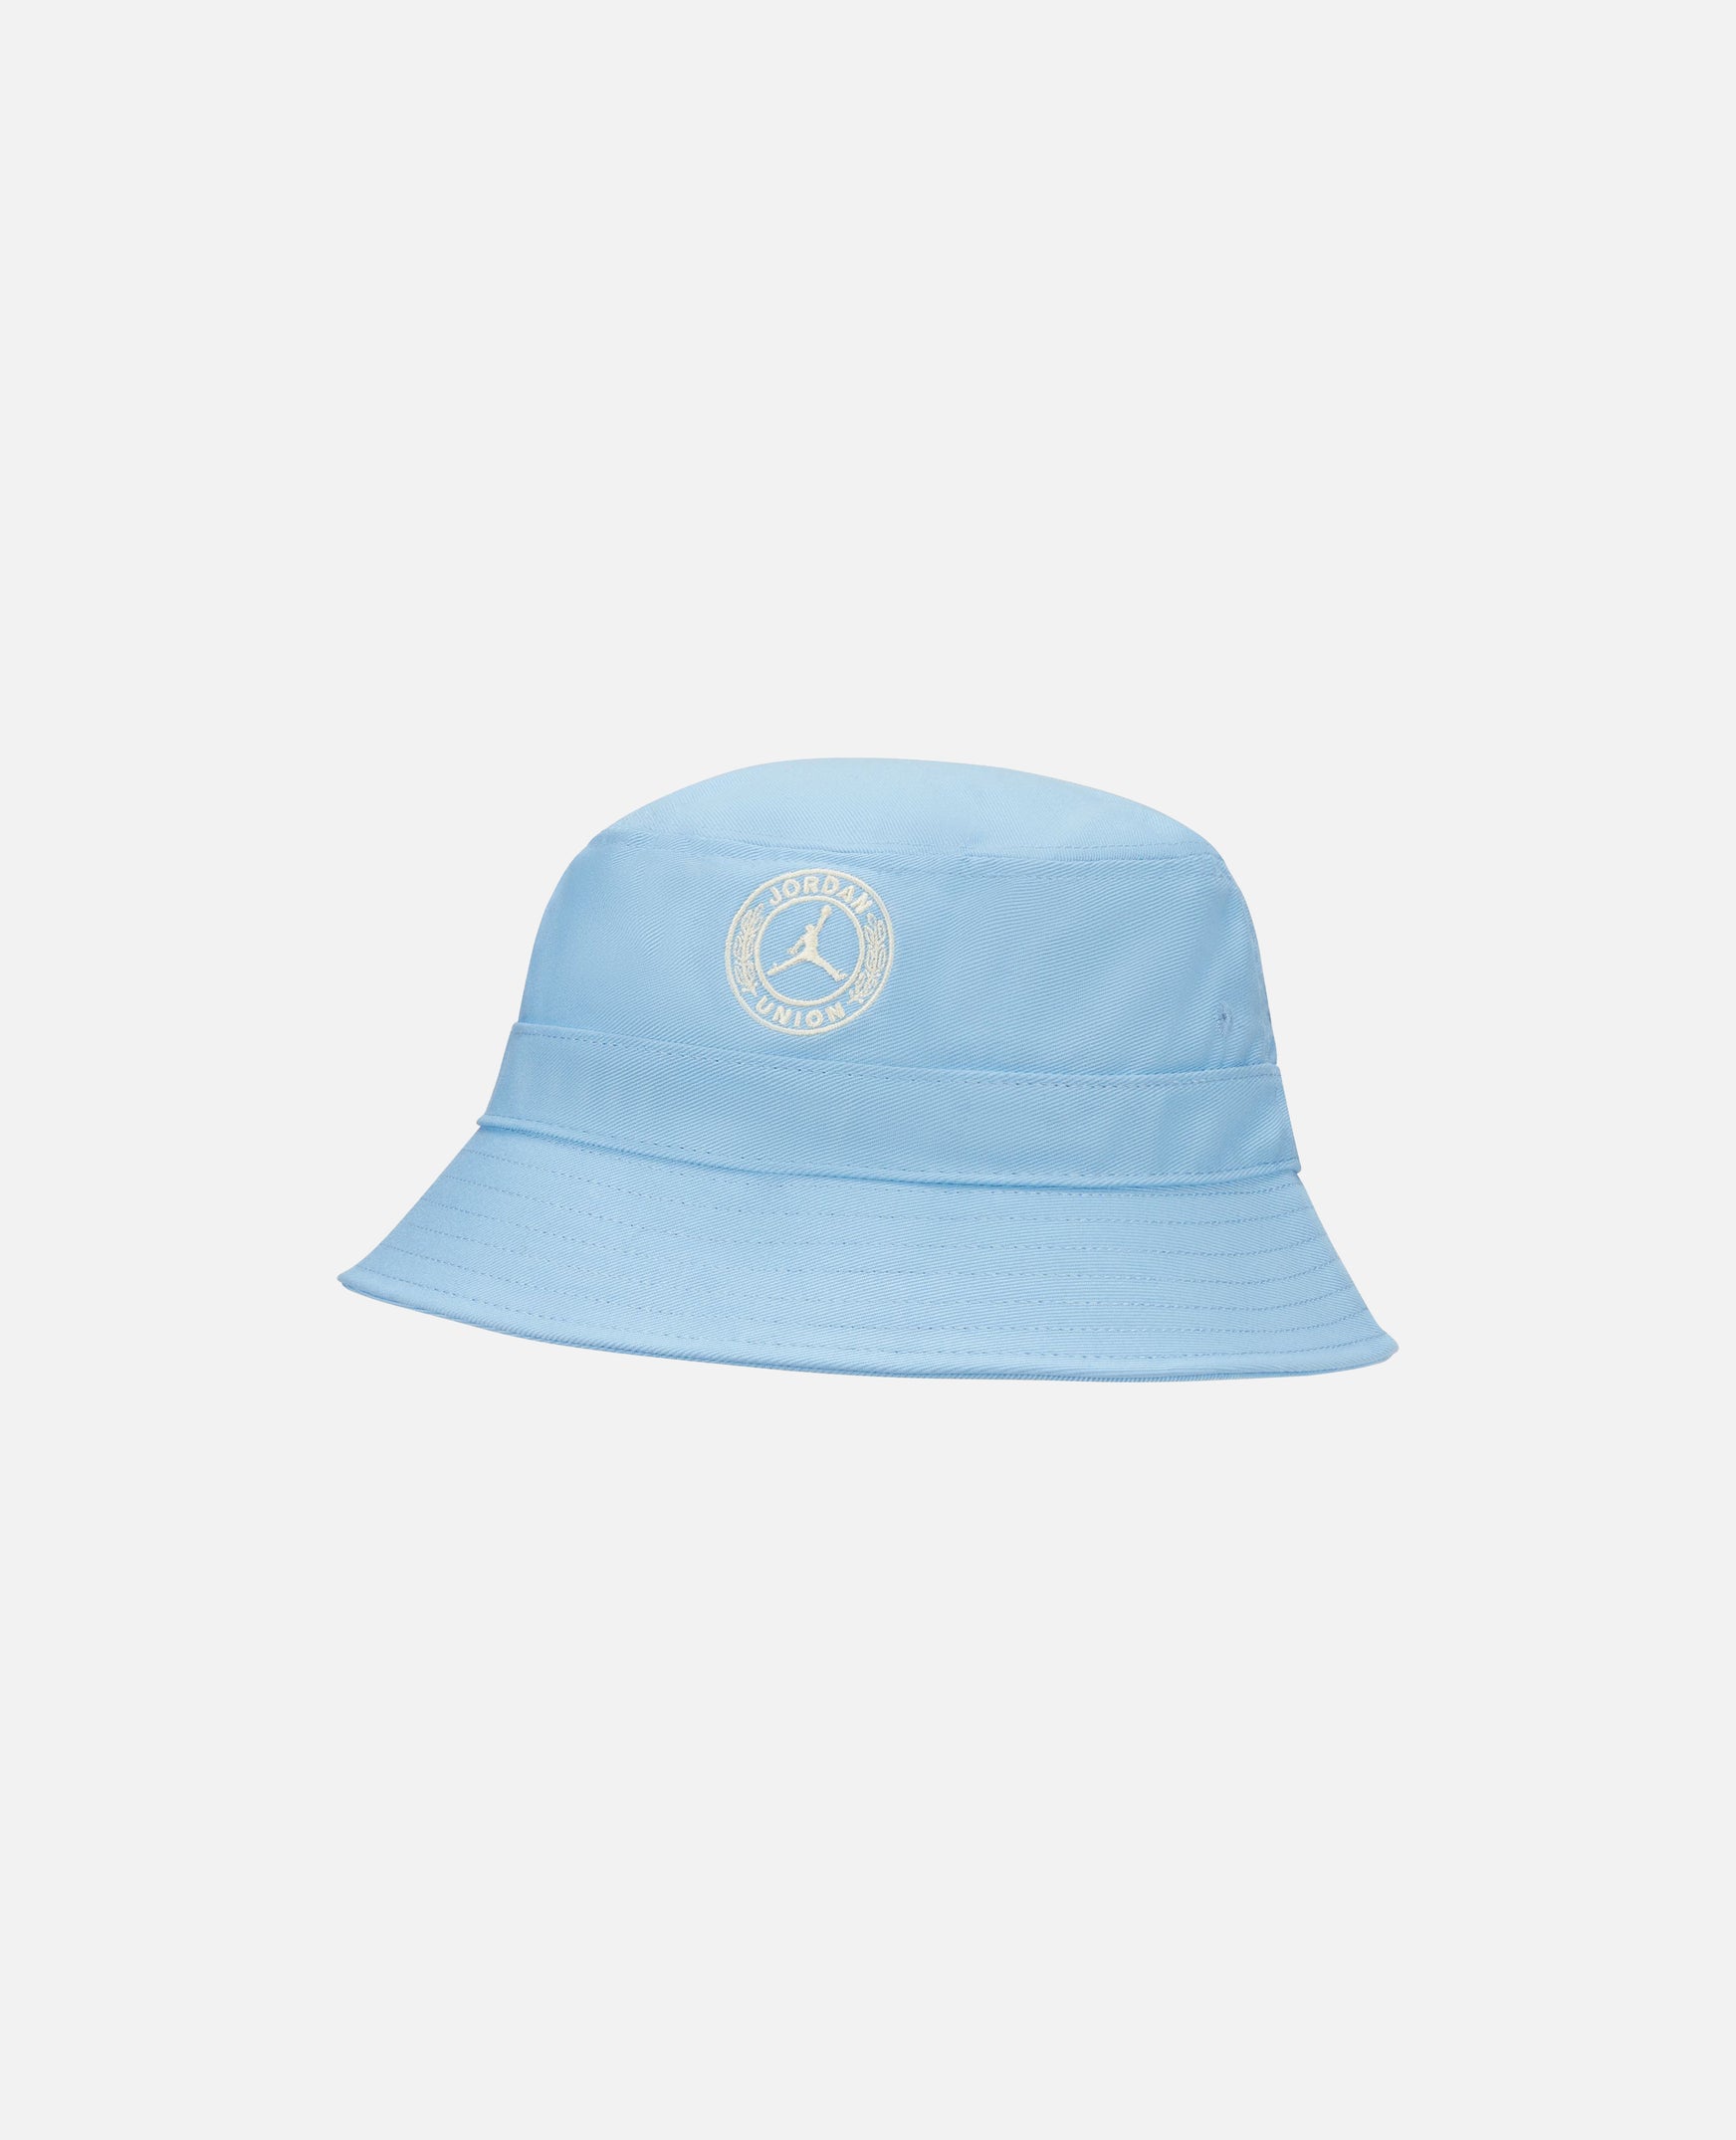 Jordan x Union Bucket Hat (Cobalt Pulse/Cobalt Pulse/Coconut Milk)